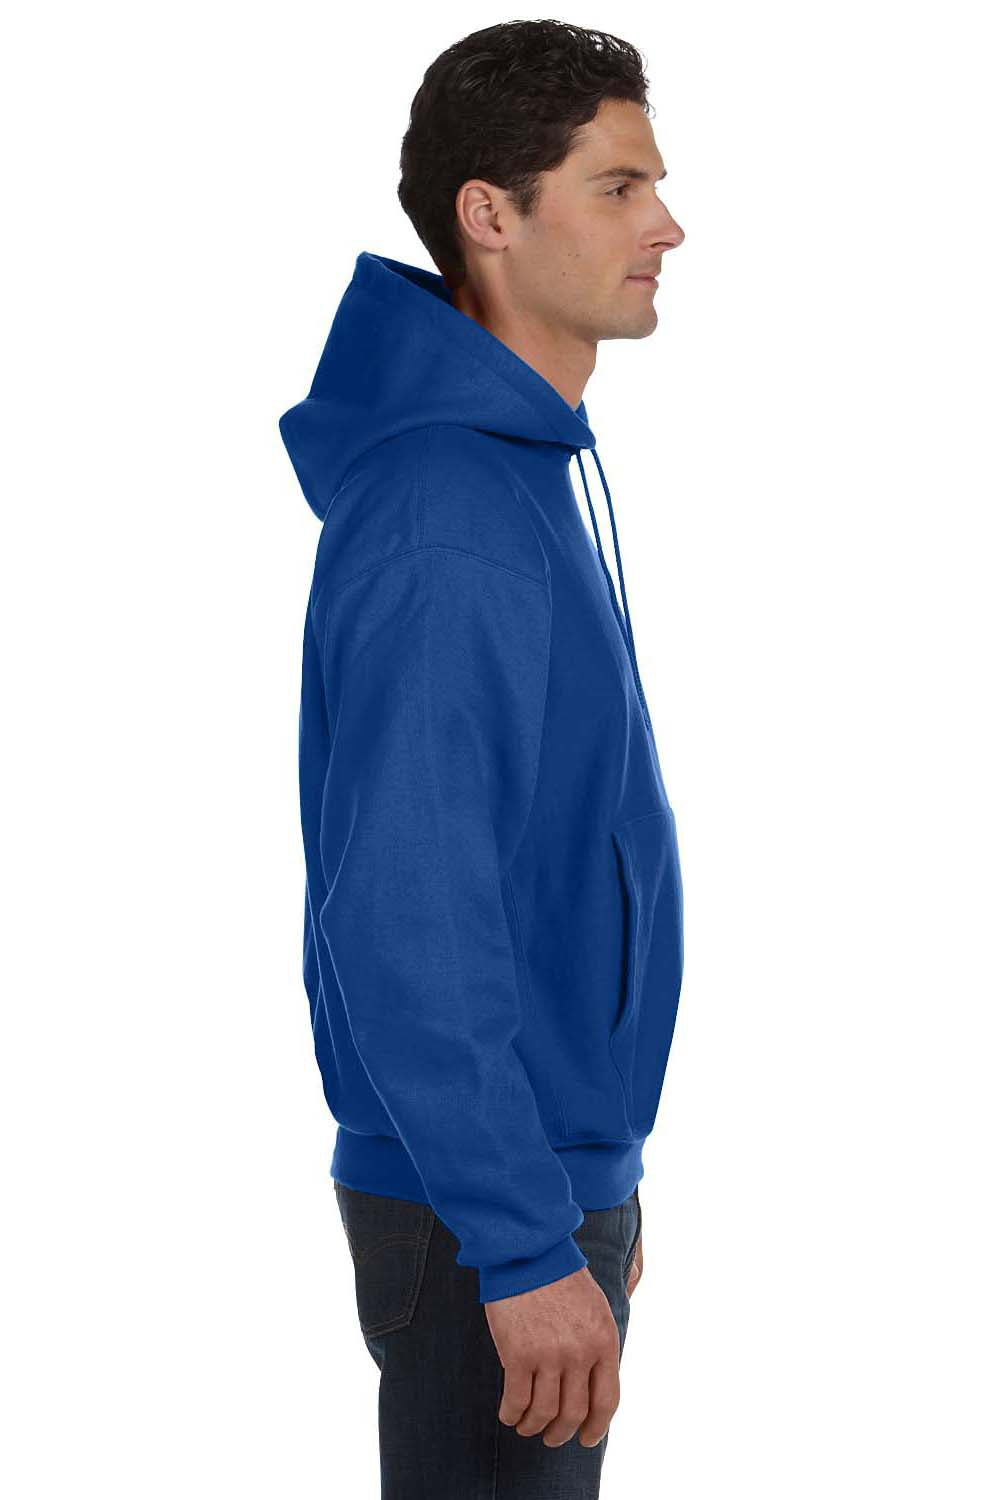 Champion S1051 Mens Hooded Sweatshirt Hoodie Royal Blue Side